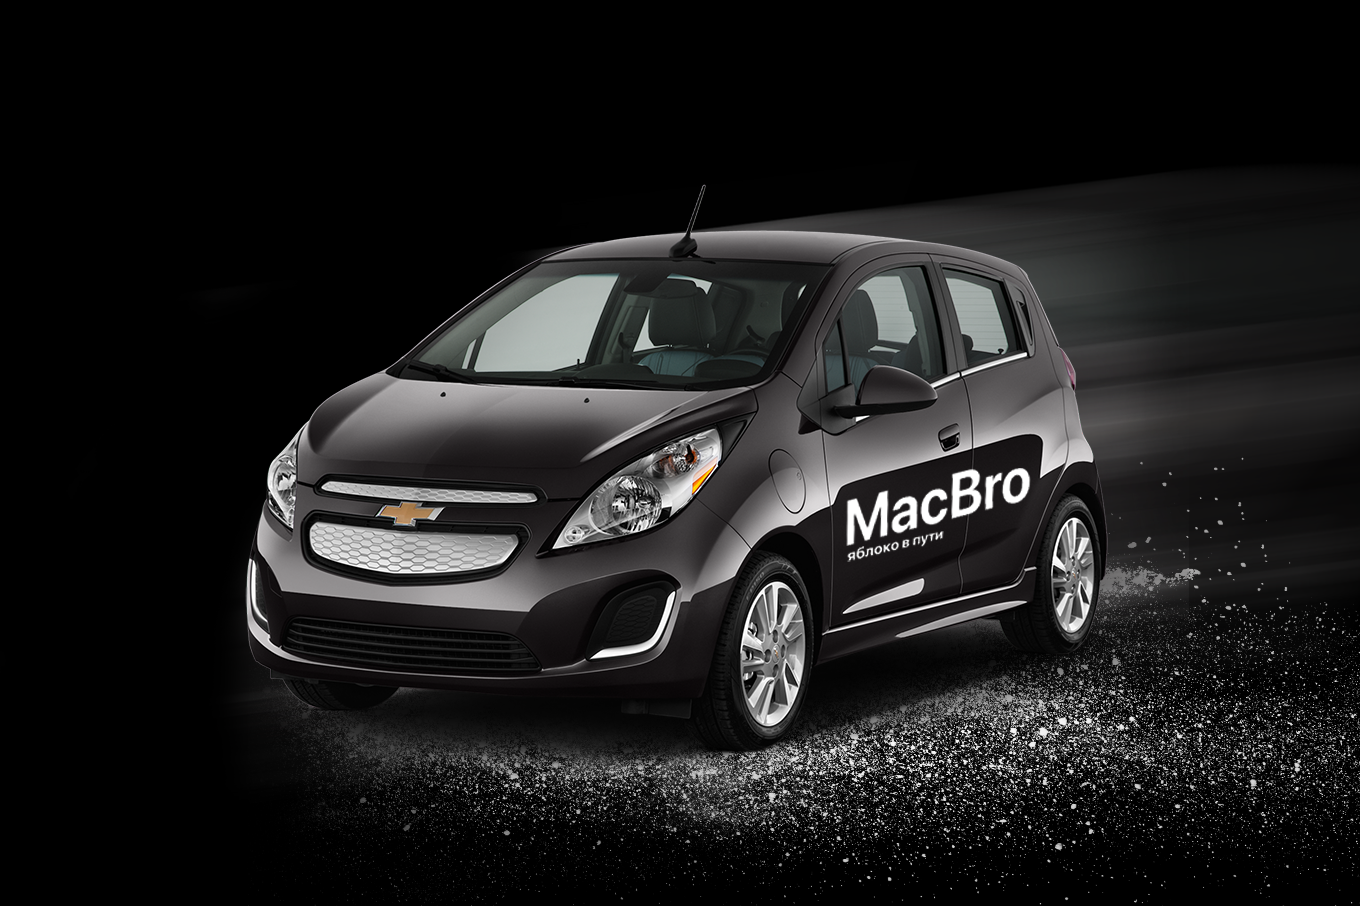 MacBro предоставляет доставку на необходимую оргтехнику, мобильные устройства, умные гаджеты и аксессуары